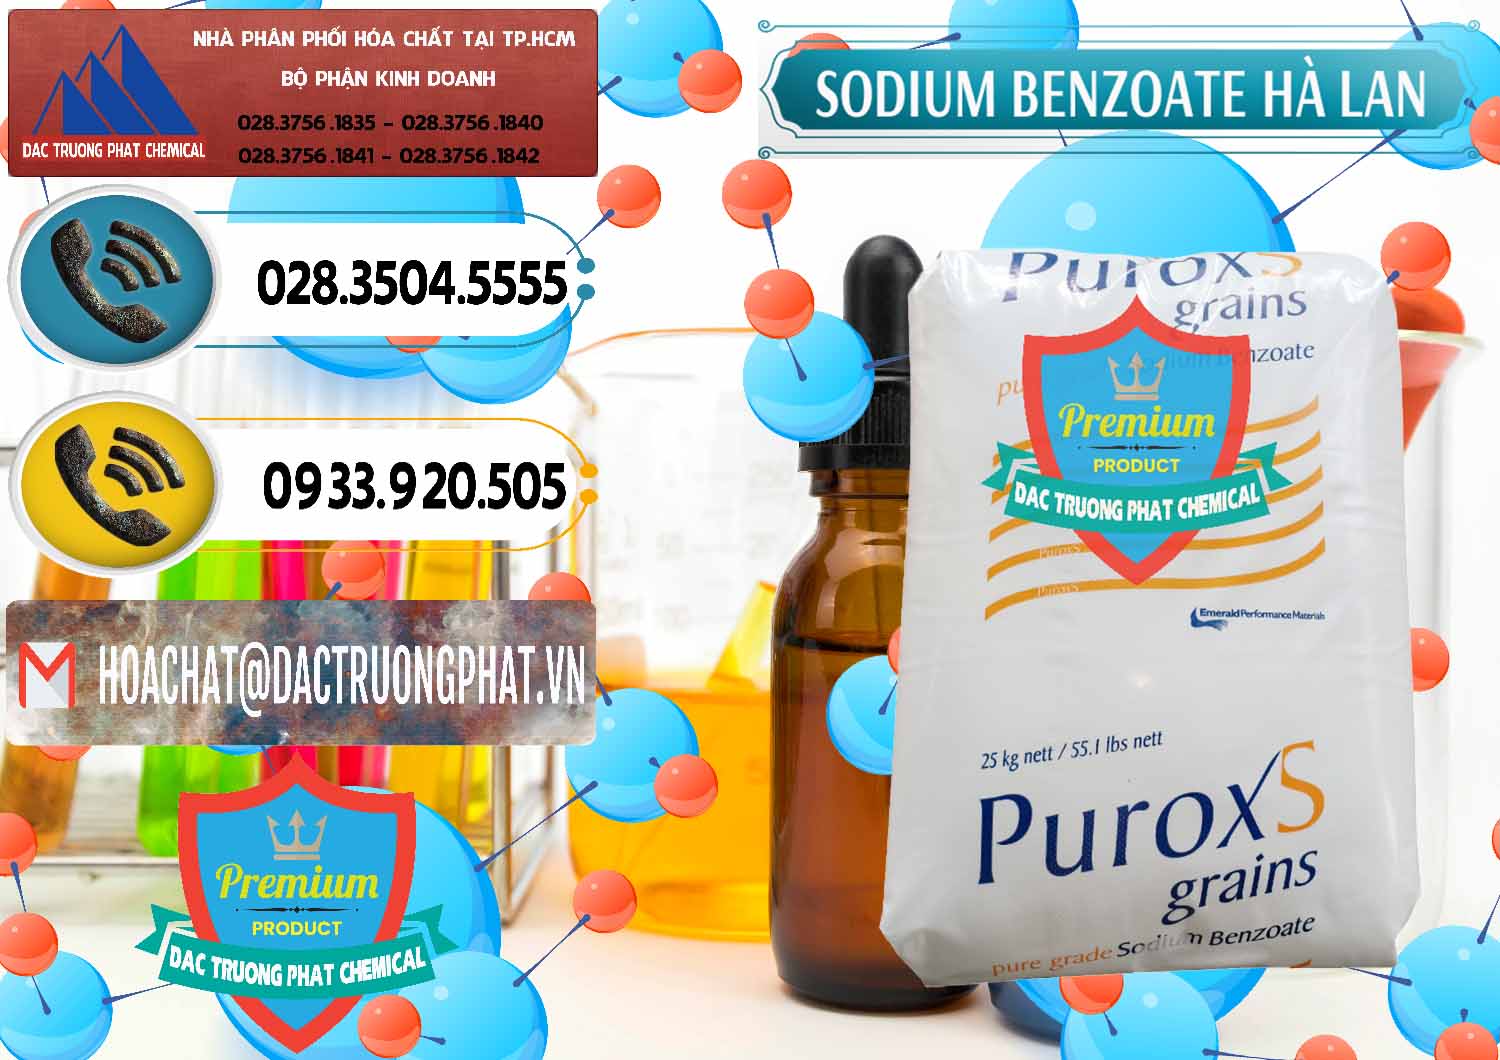 Bán Sodium Benzoate - Mốc Bột Puroxs Hà Lan Netherlands - 0467 - Đơn vị kinh doanh và cung cấp hóa chất tại TP.HCM - hoachatdetnhuom.vn